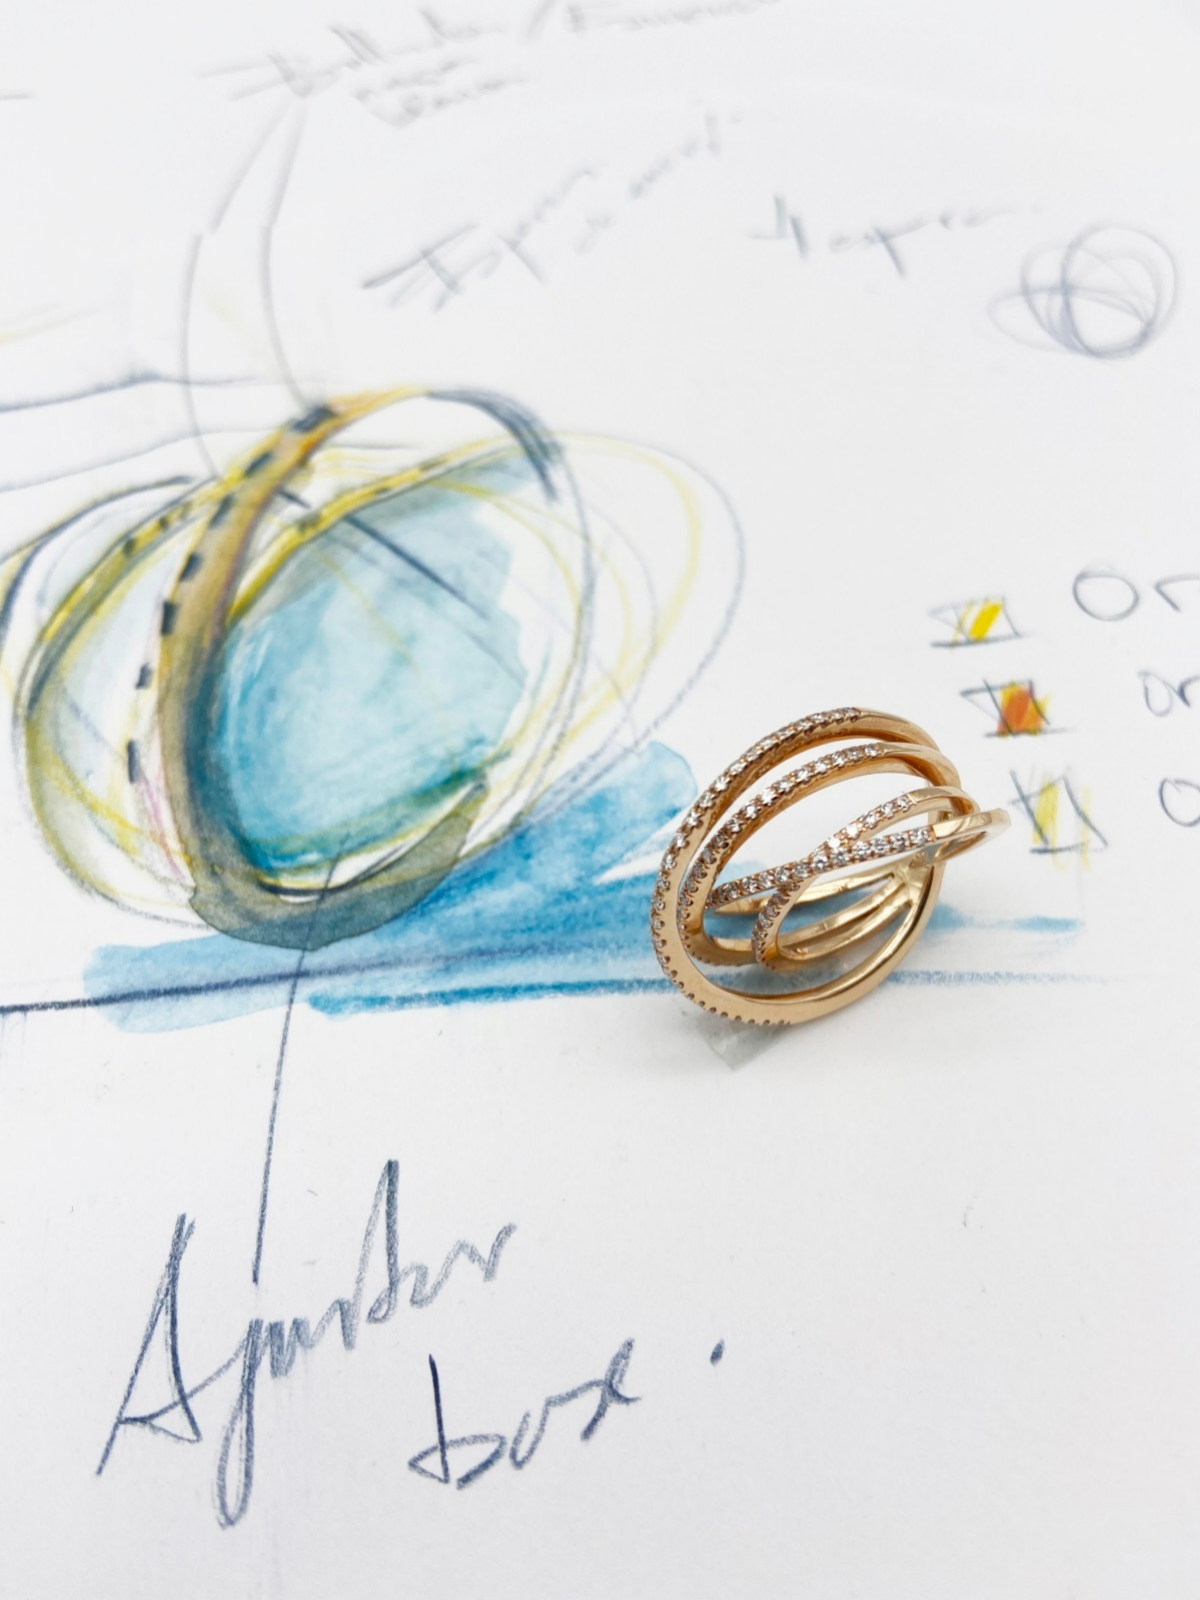 Joyeros del metal fino. "El anillo infinito representa en 4 aros las etapas de la vida, está realizado a mano y cada pieza es diferente". Clo Madrid.